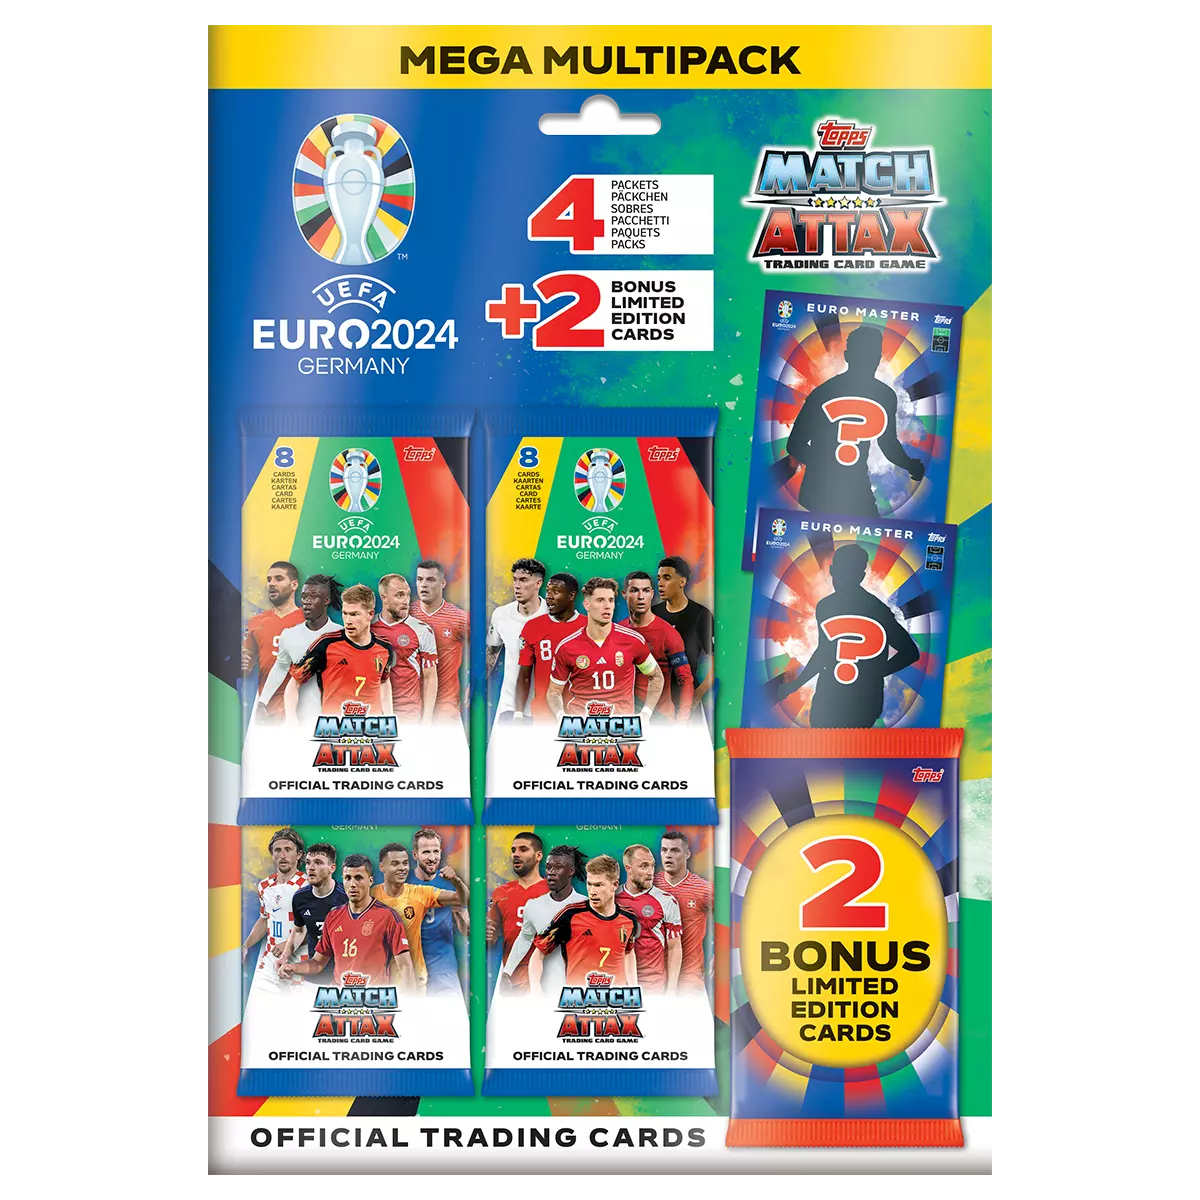 UEFA EURO 2024 Mega Multipack